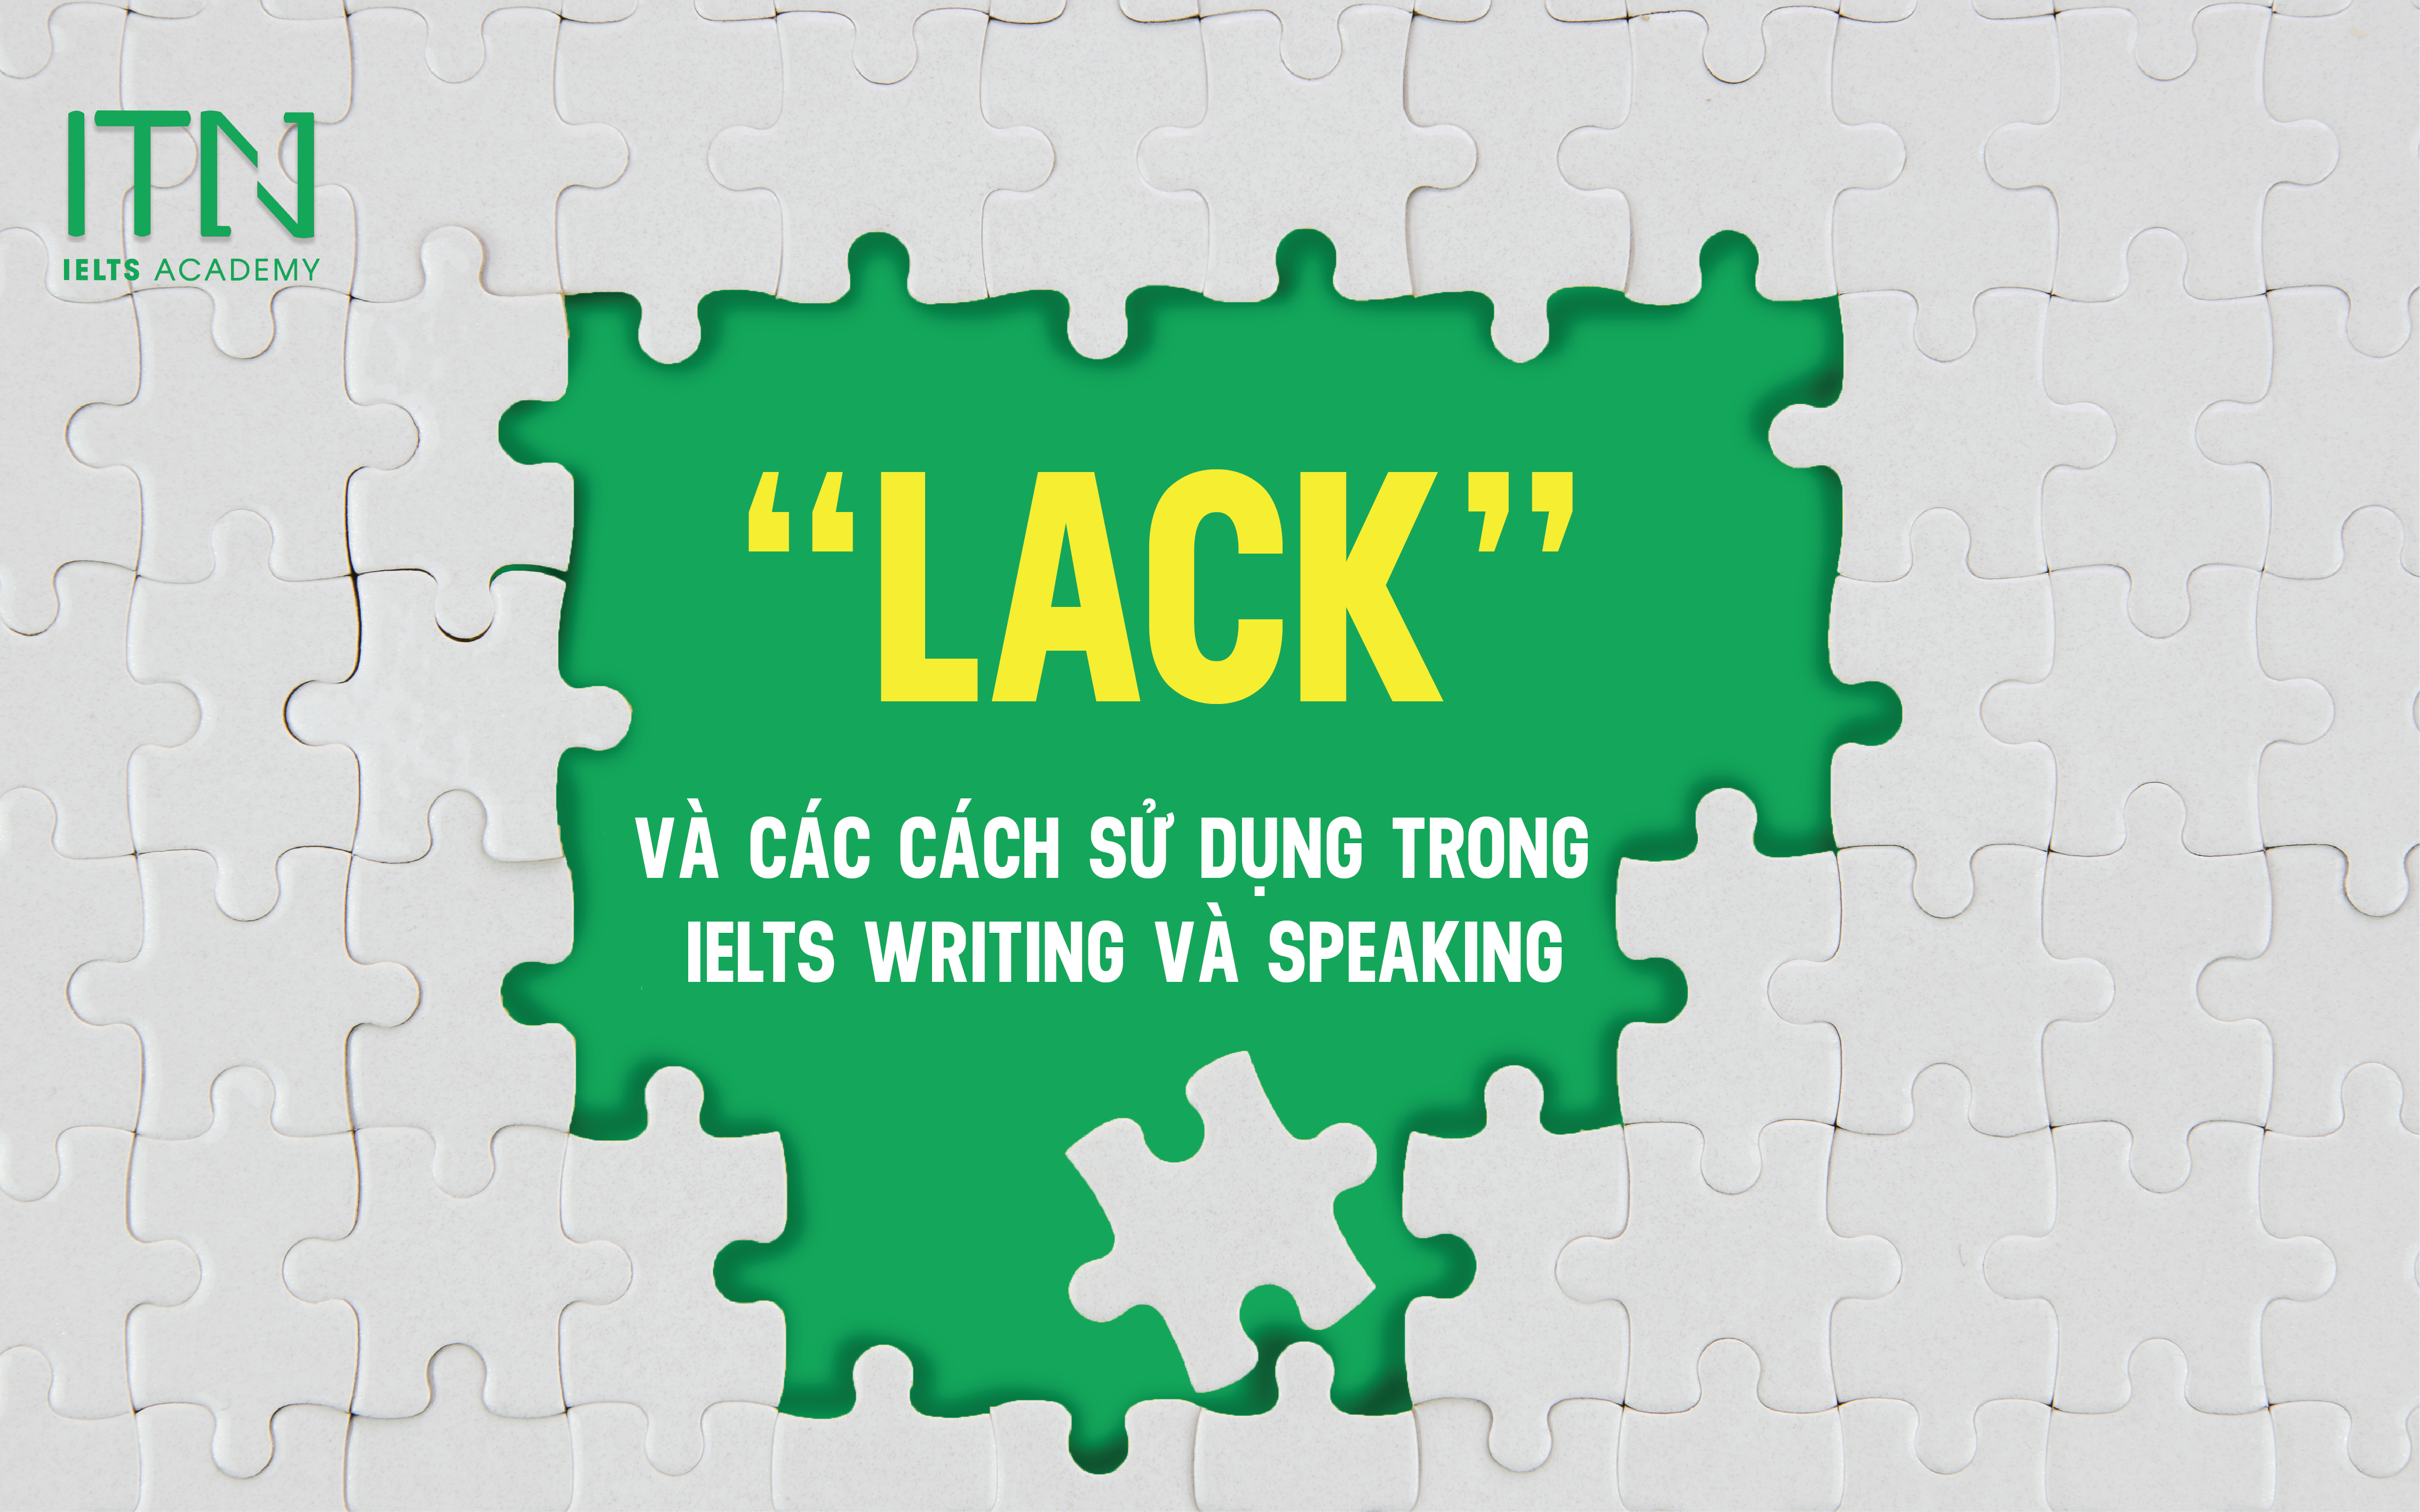 Từ "Lack" Và Các Cách Sử Dụng Trong Ielts Writing Và Speaking